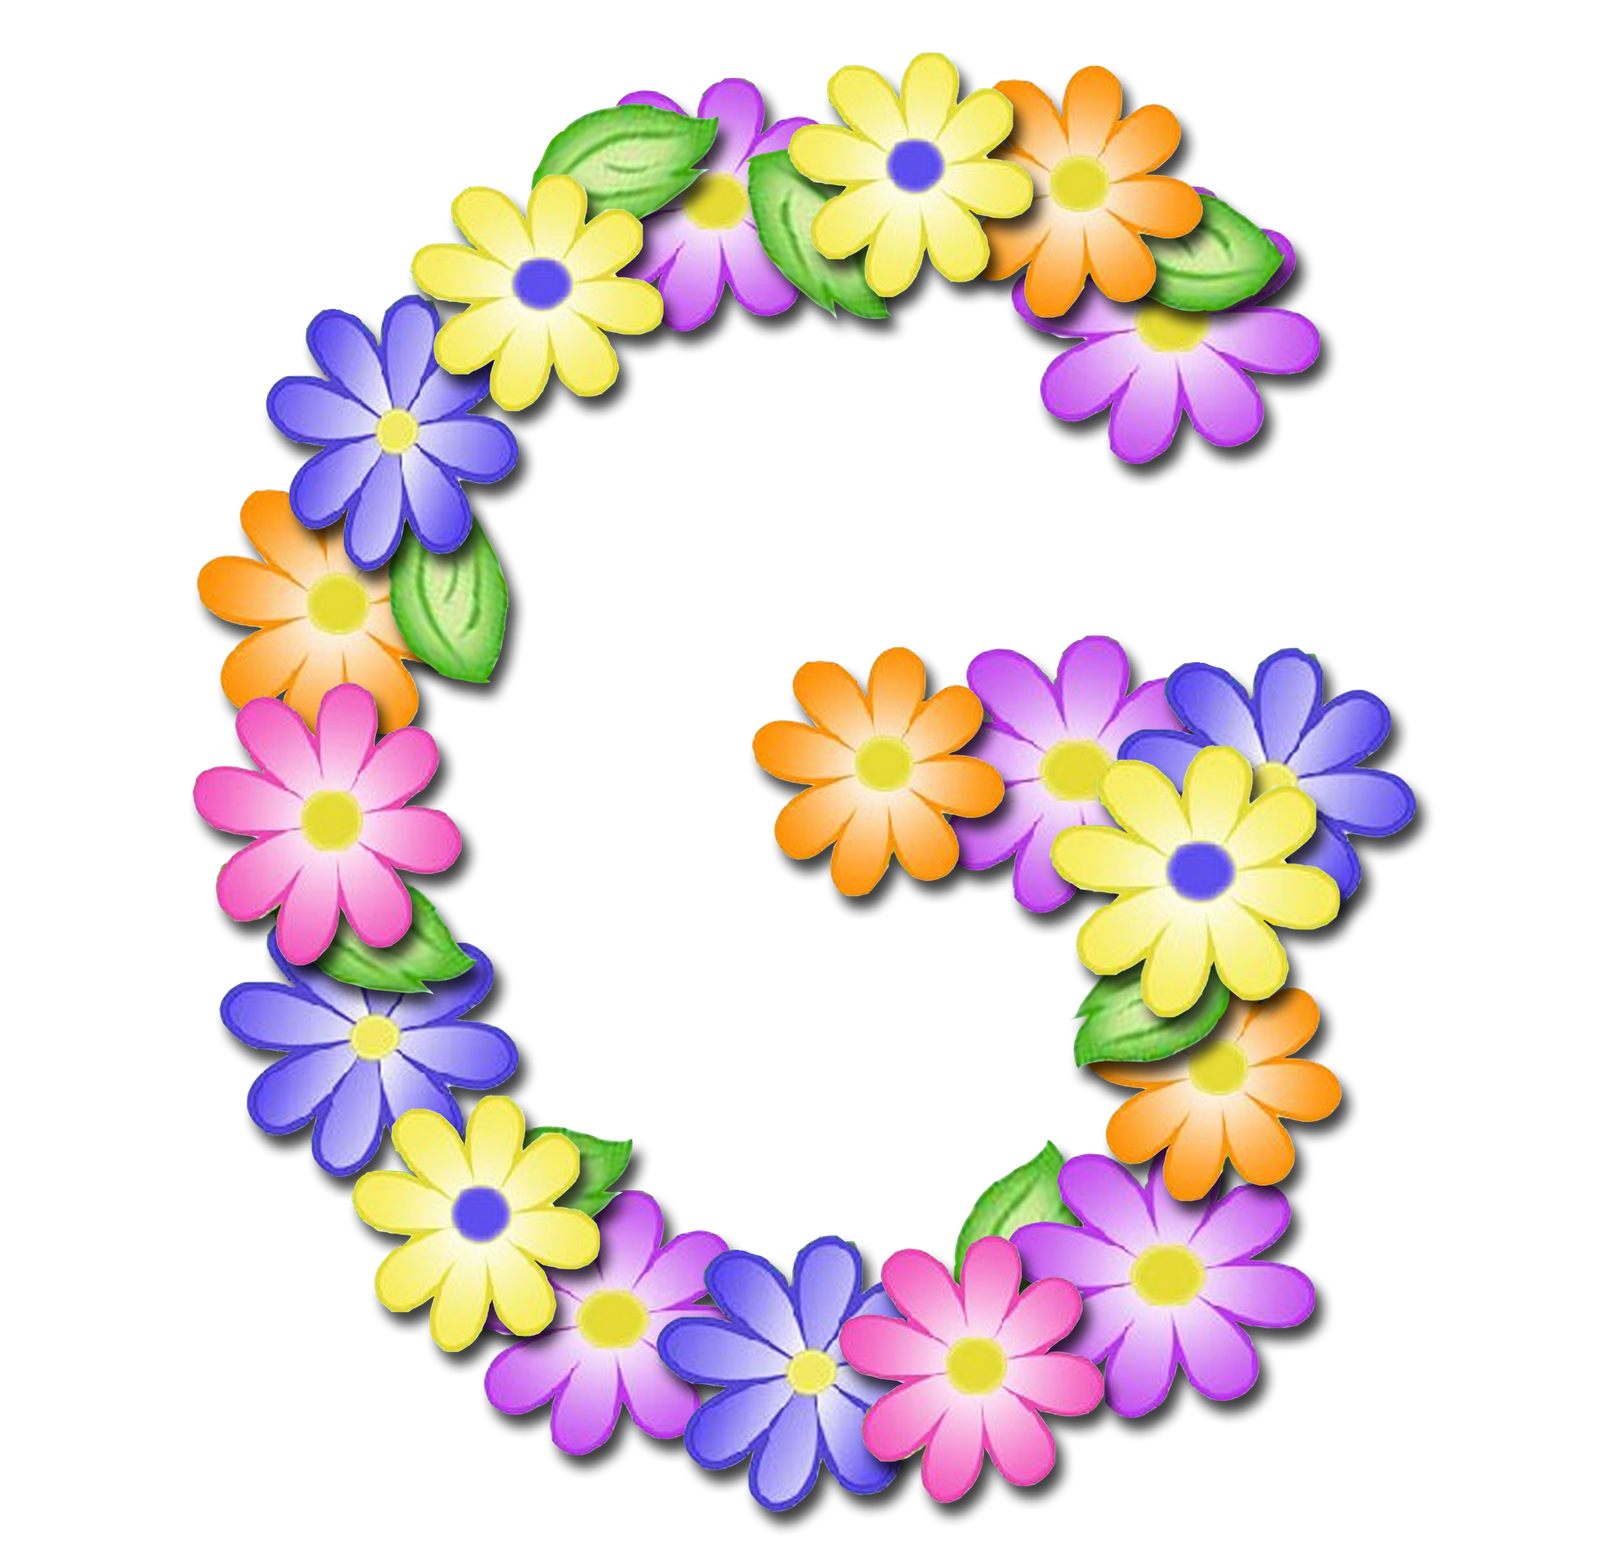 صور الحروف الإنجليزية بأجمل الزهور والورود بخلفية شفافة بنج png وجودة عالية للمصممين :: إبحث عن حروف إسمك بالإنجليزية P_1699kmgzd7